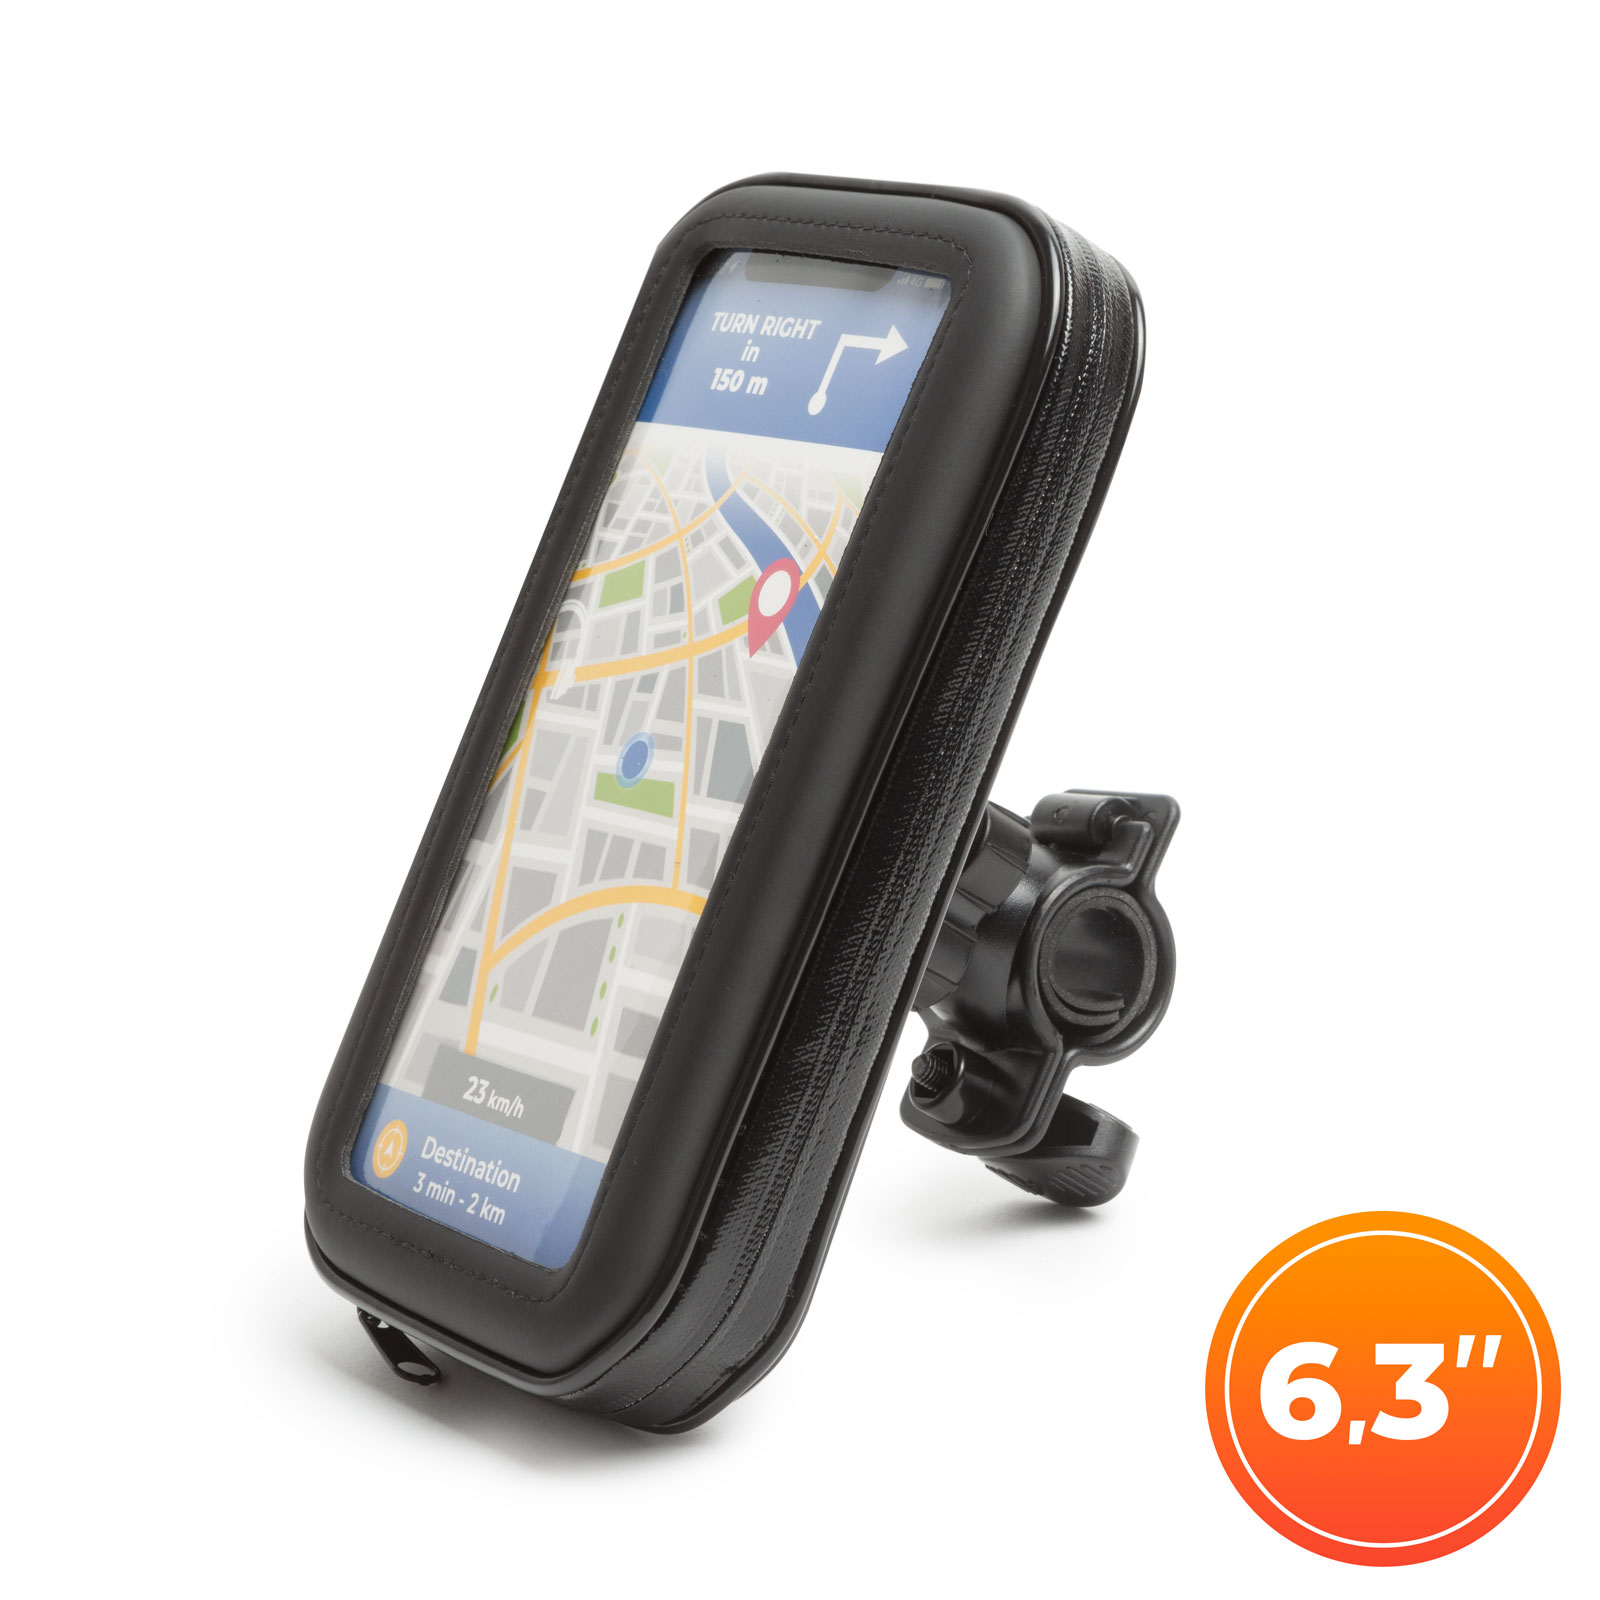 Husa pentru telefon montaj pe biciclete max. 6.3" Wheel Zone